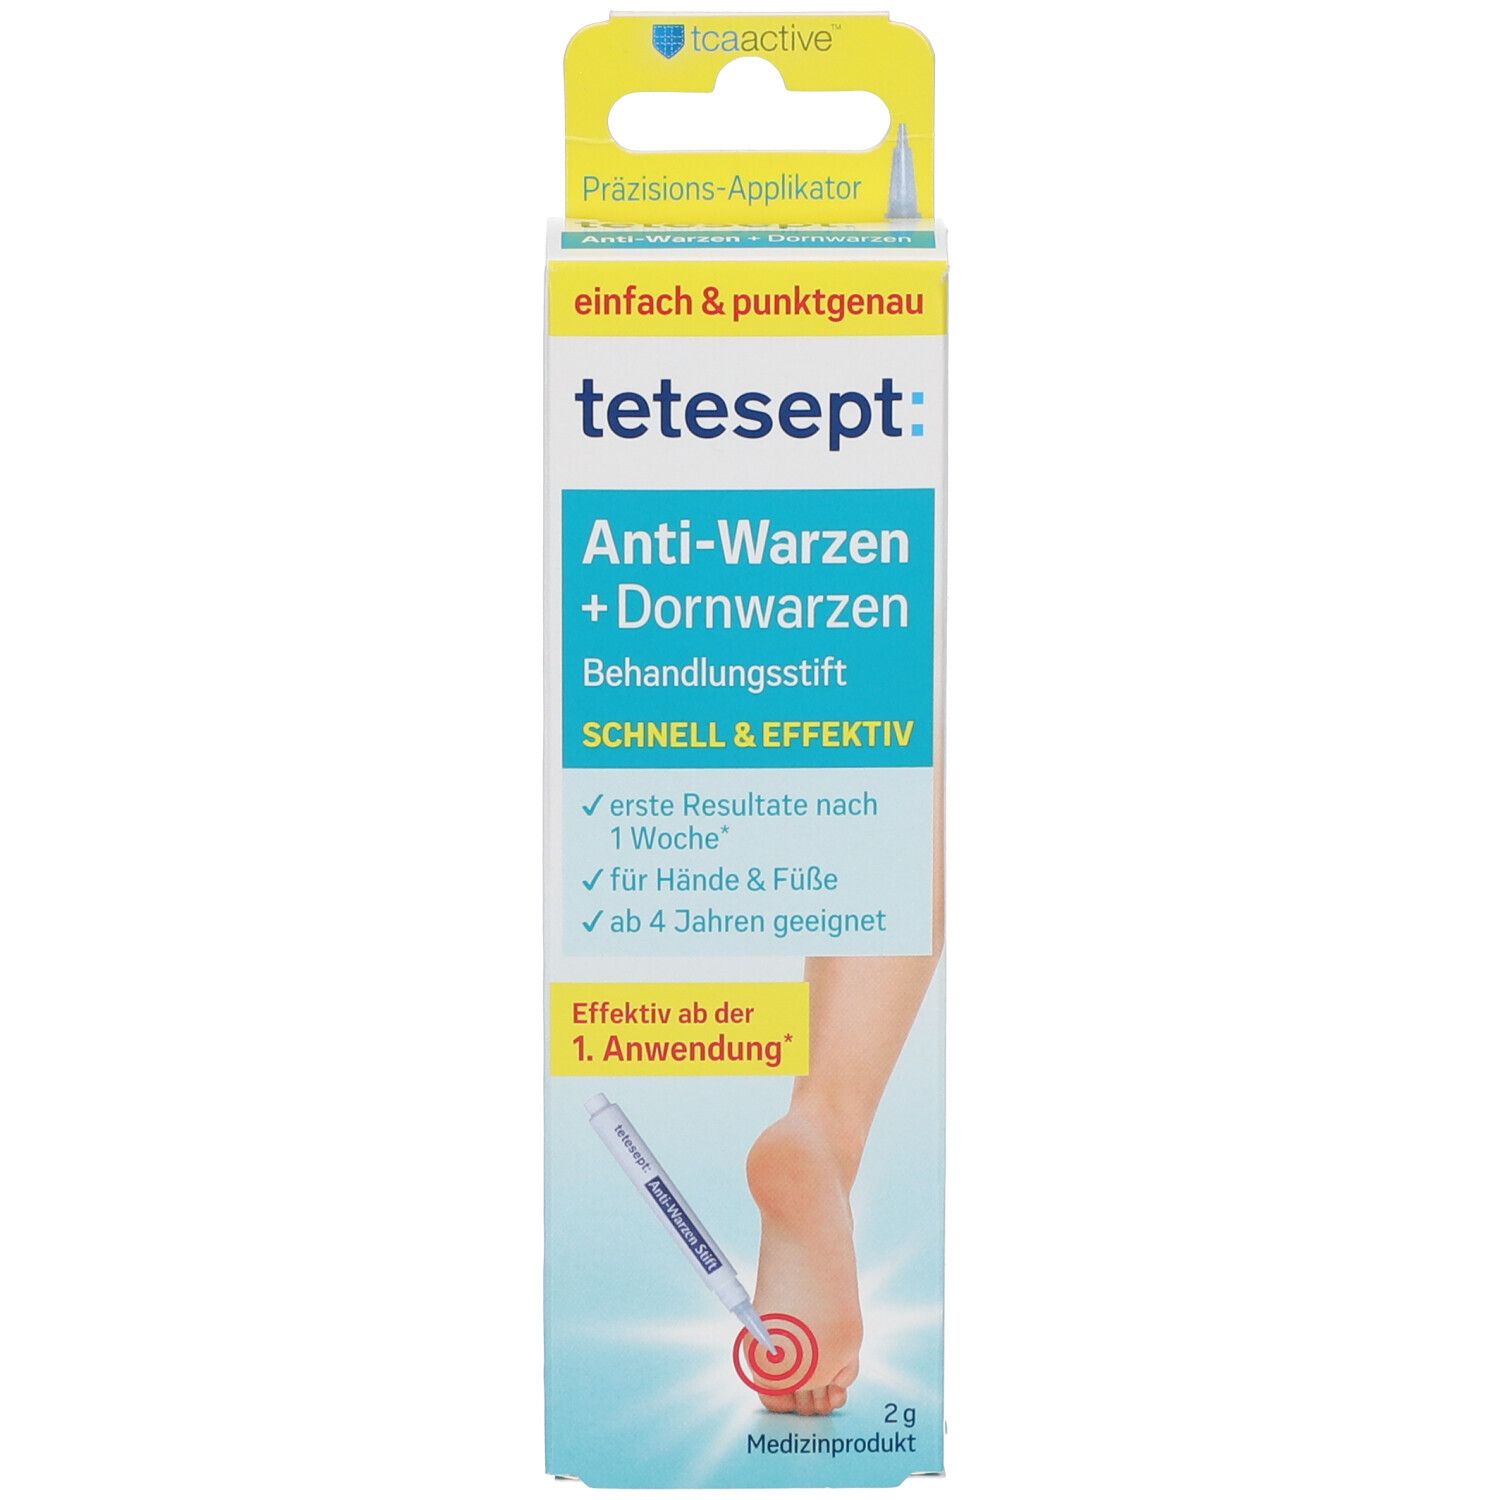 tetesept® Anti-Warzen + Dornwarzen